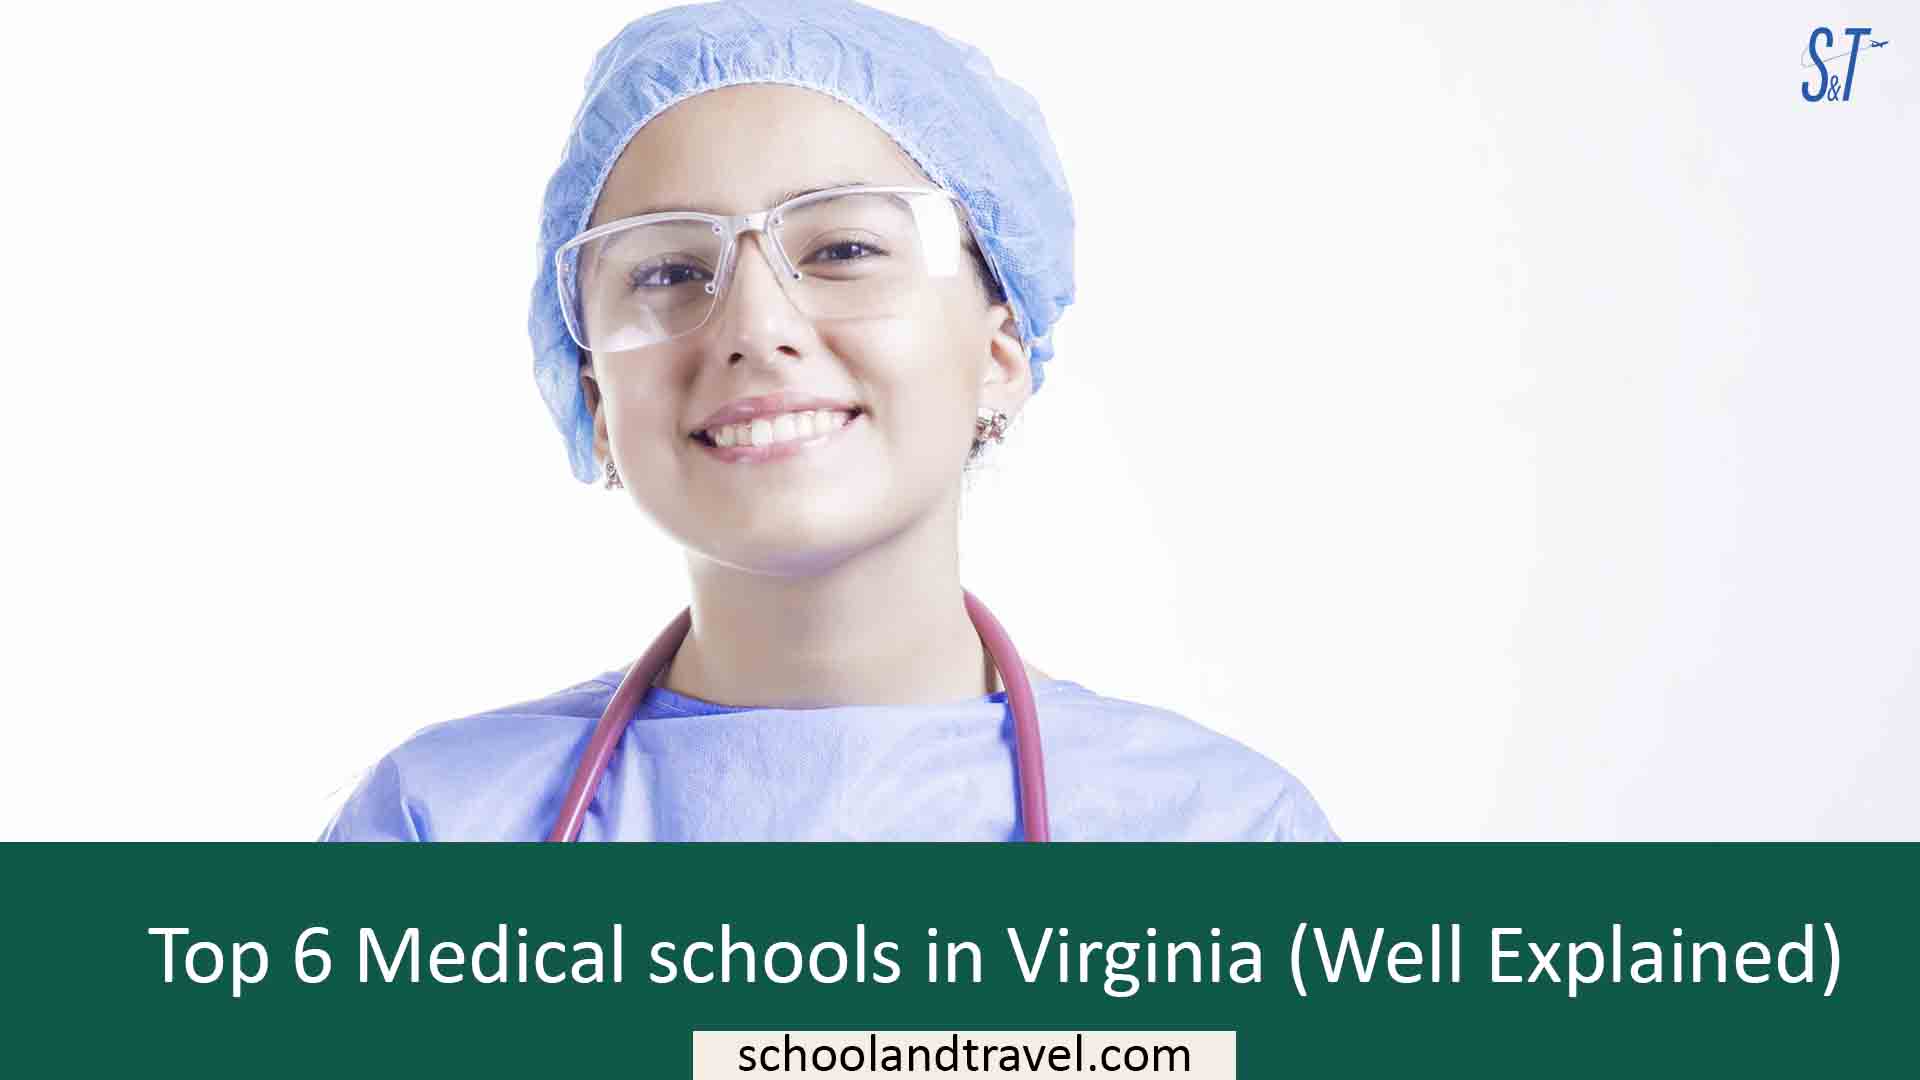 Medical schools in Virginia